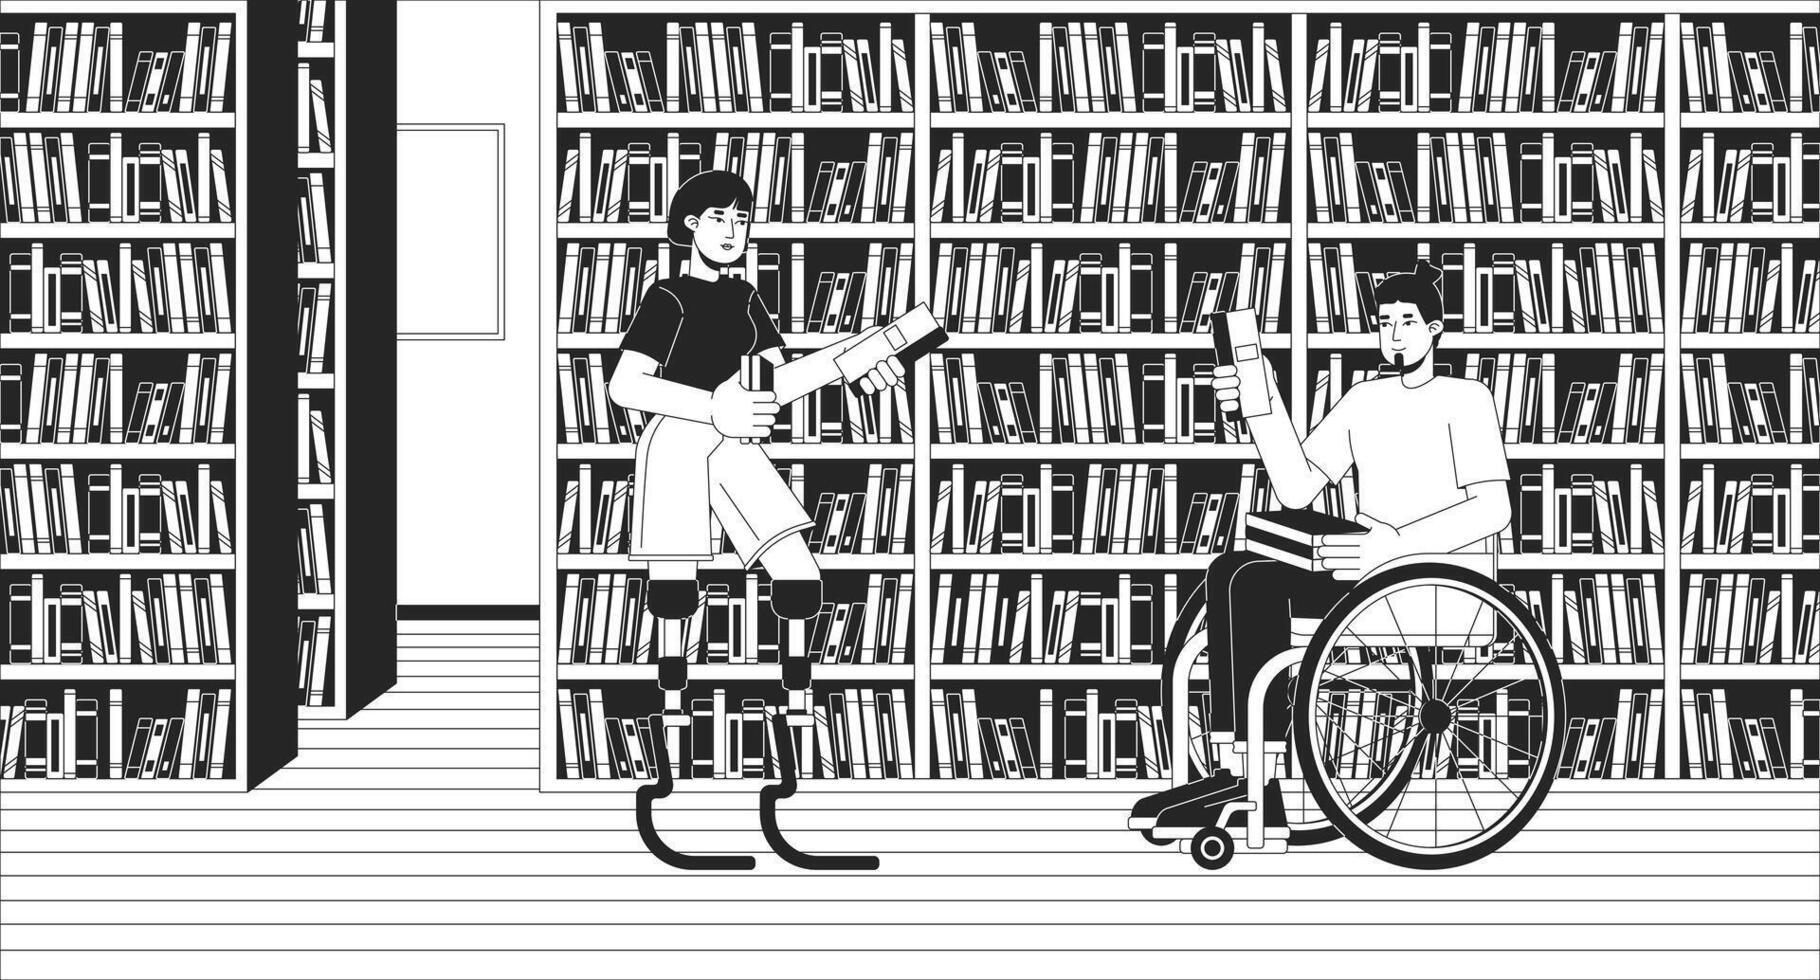 Inaktiverad vänner gående till bibliotek svart och vit linje illustration. kvinna med protes- ben och rullstolsburna man 2d tecken svartvit bakgrund. inkludering översikt scen bild vektor